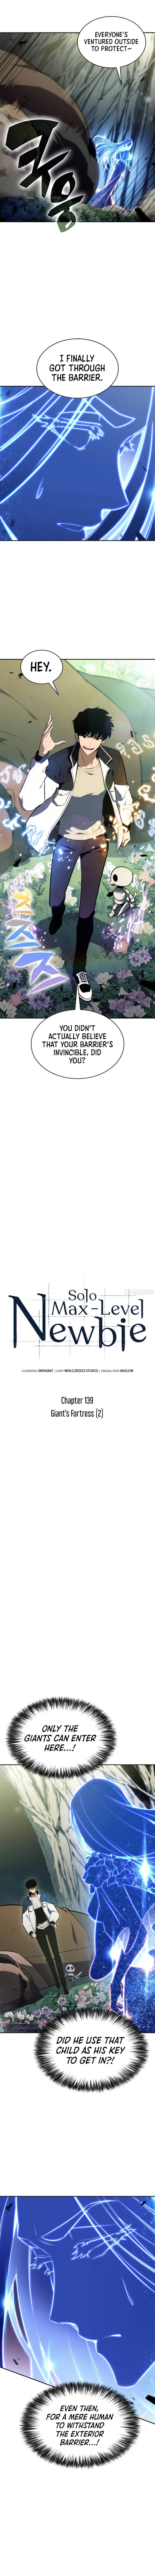 solo-max-level-newbie-chap-139-5